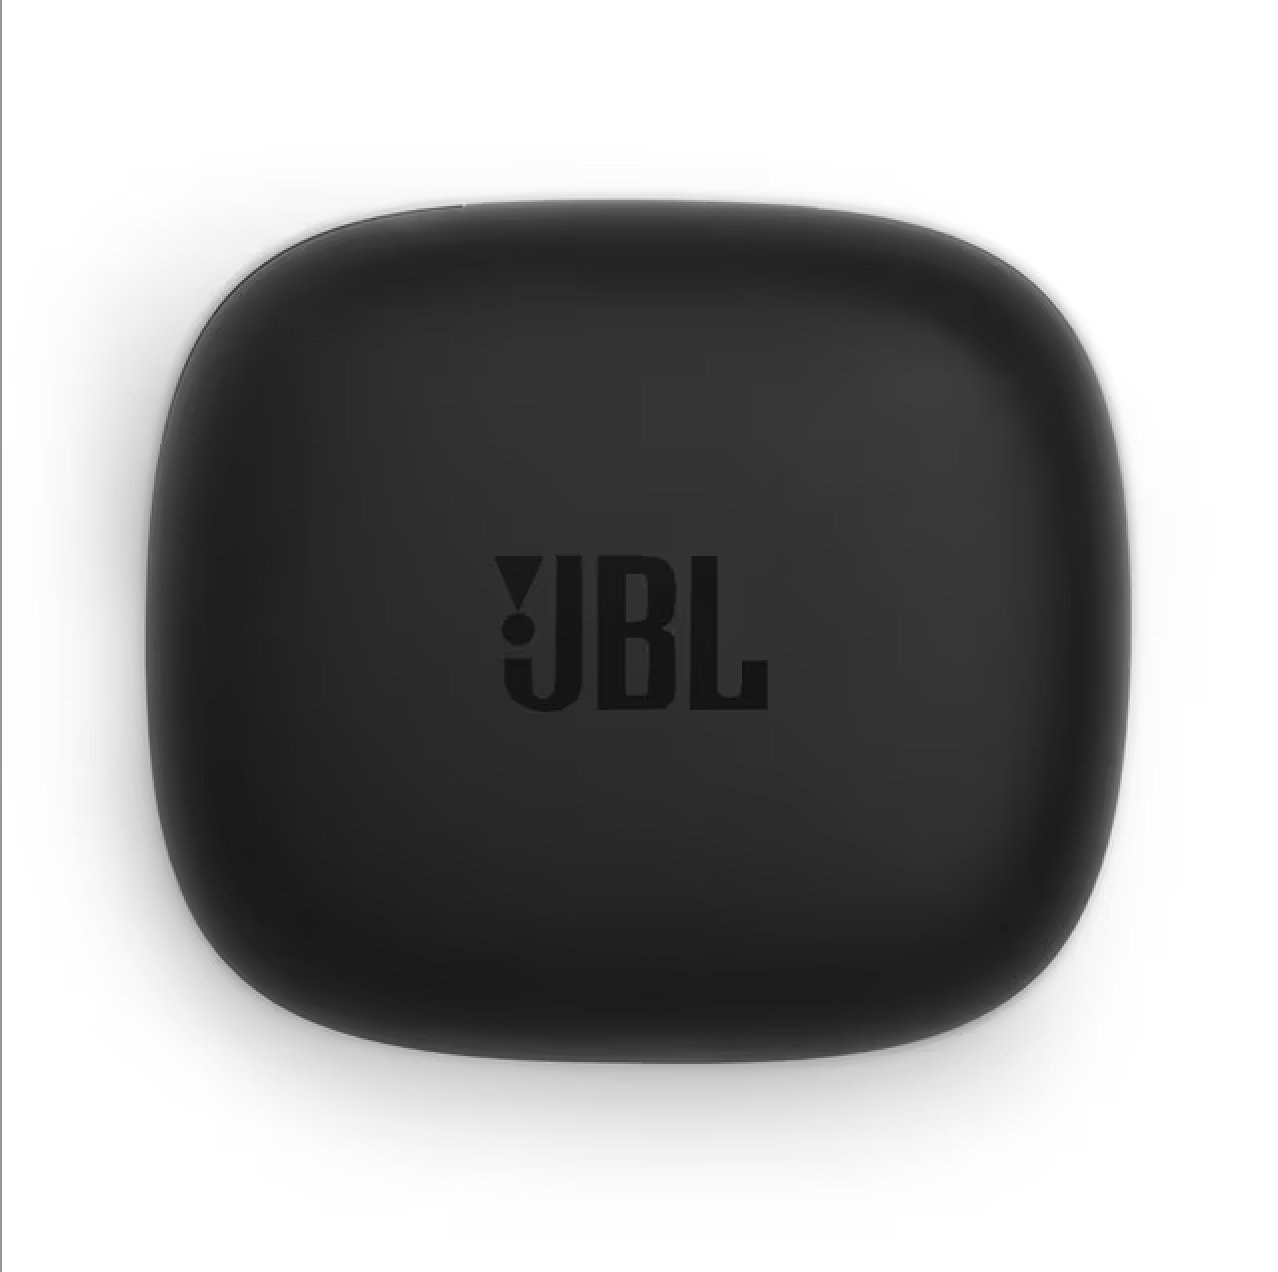  JBL Live Pro 2: 40 horas de tiempo de reproducción, cancelación  de ruido adaptativa verdadera, micrófonos ambientales inteligentes y  formación de haces (azul), pequeño : Electrónica